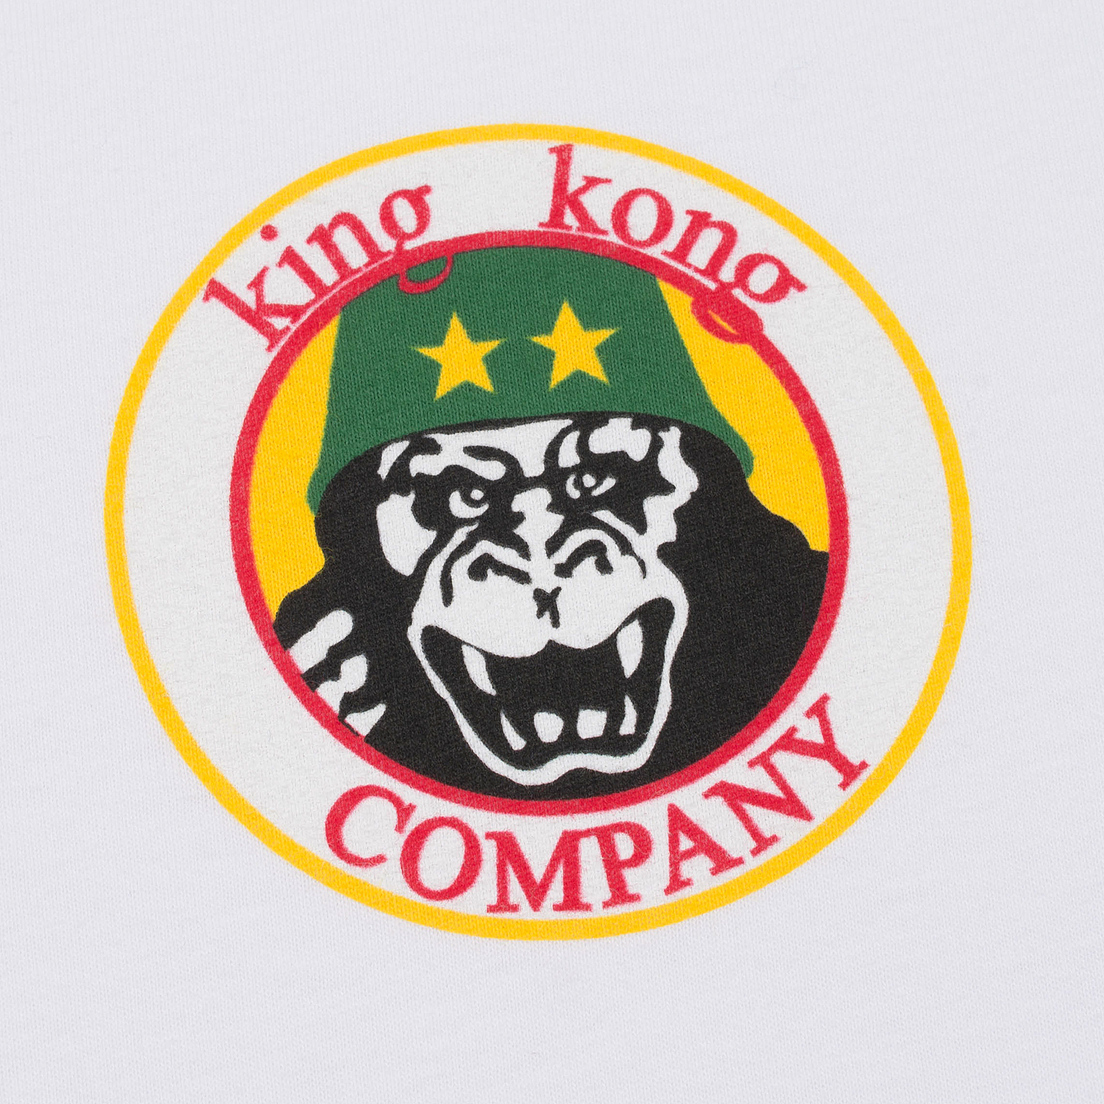 TSPTR Мужская футболка King Kong Company